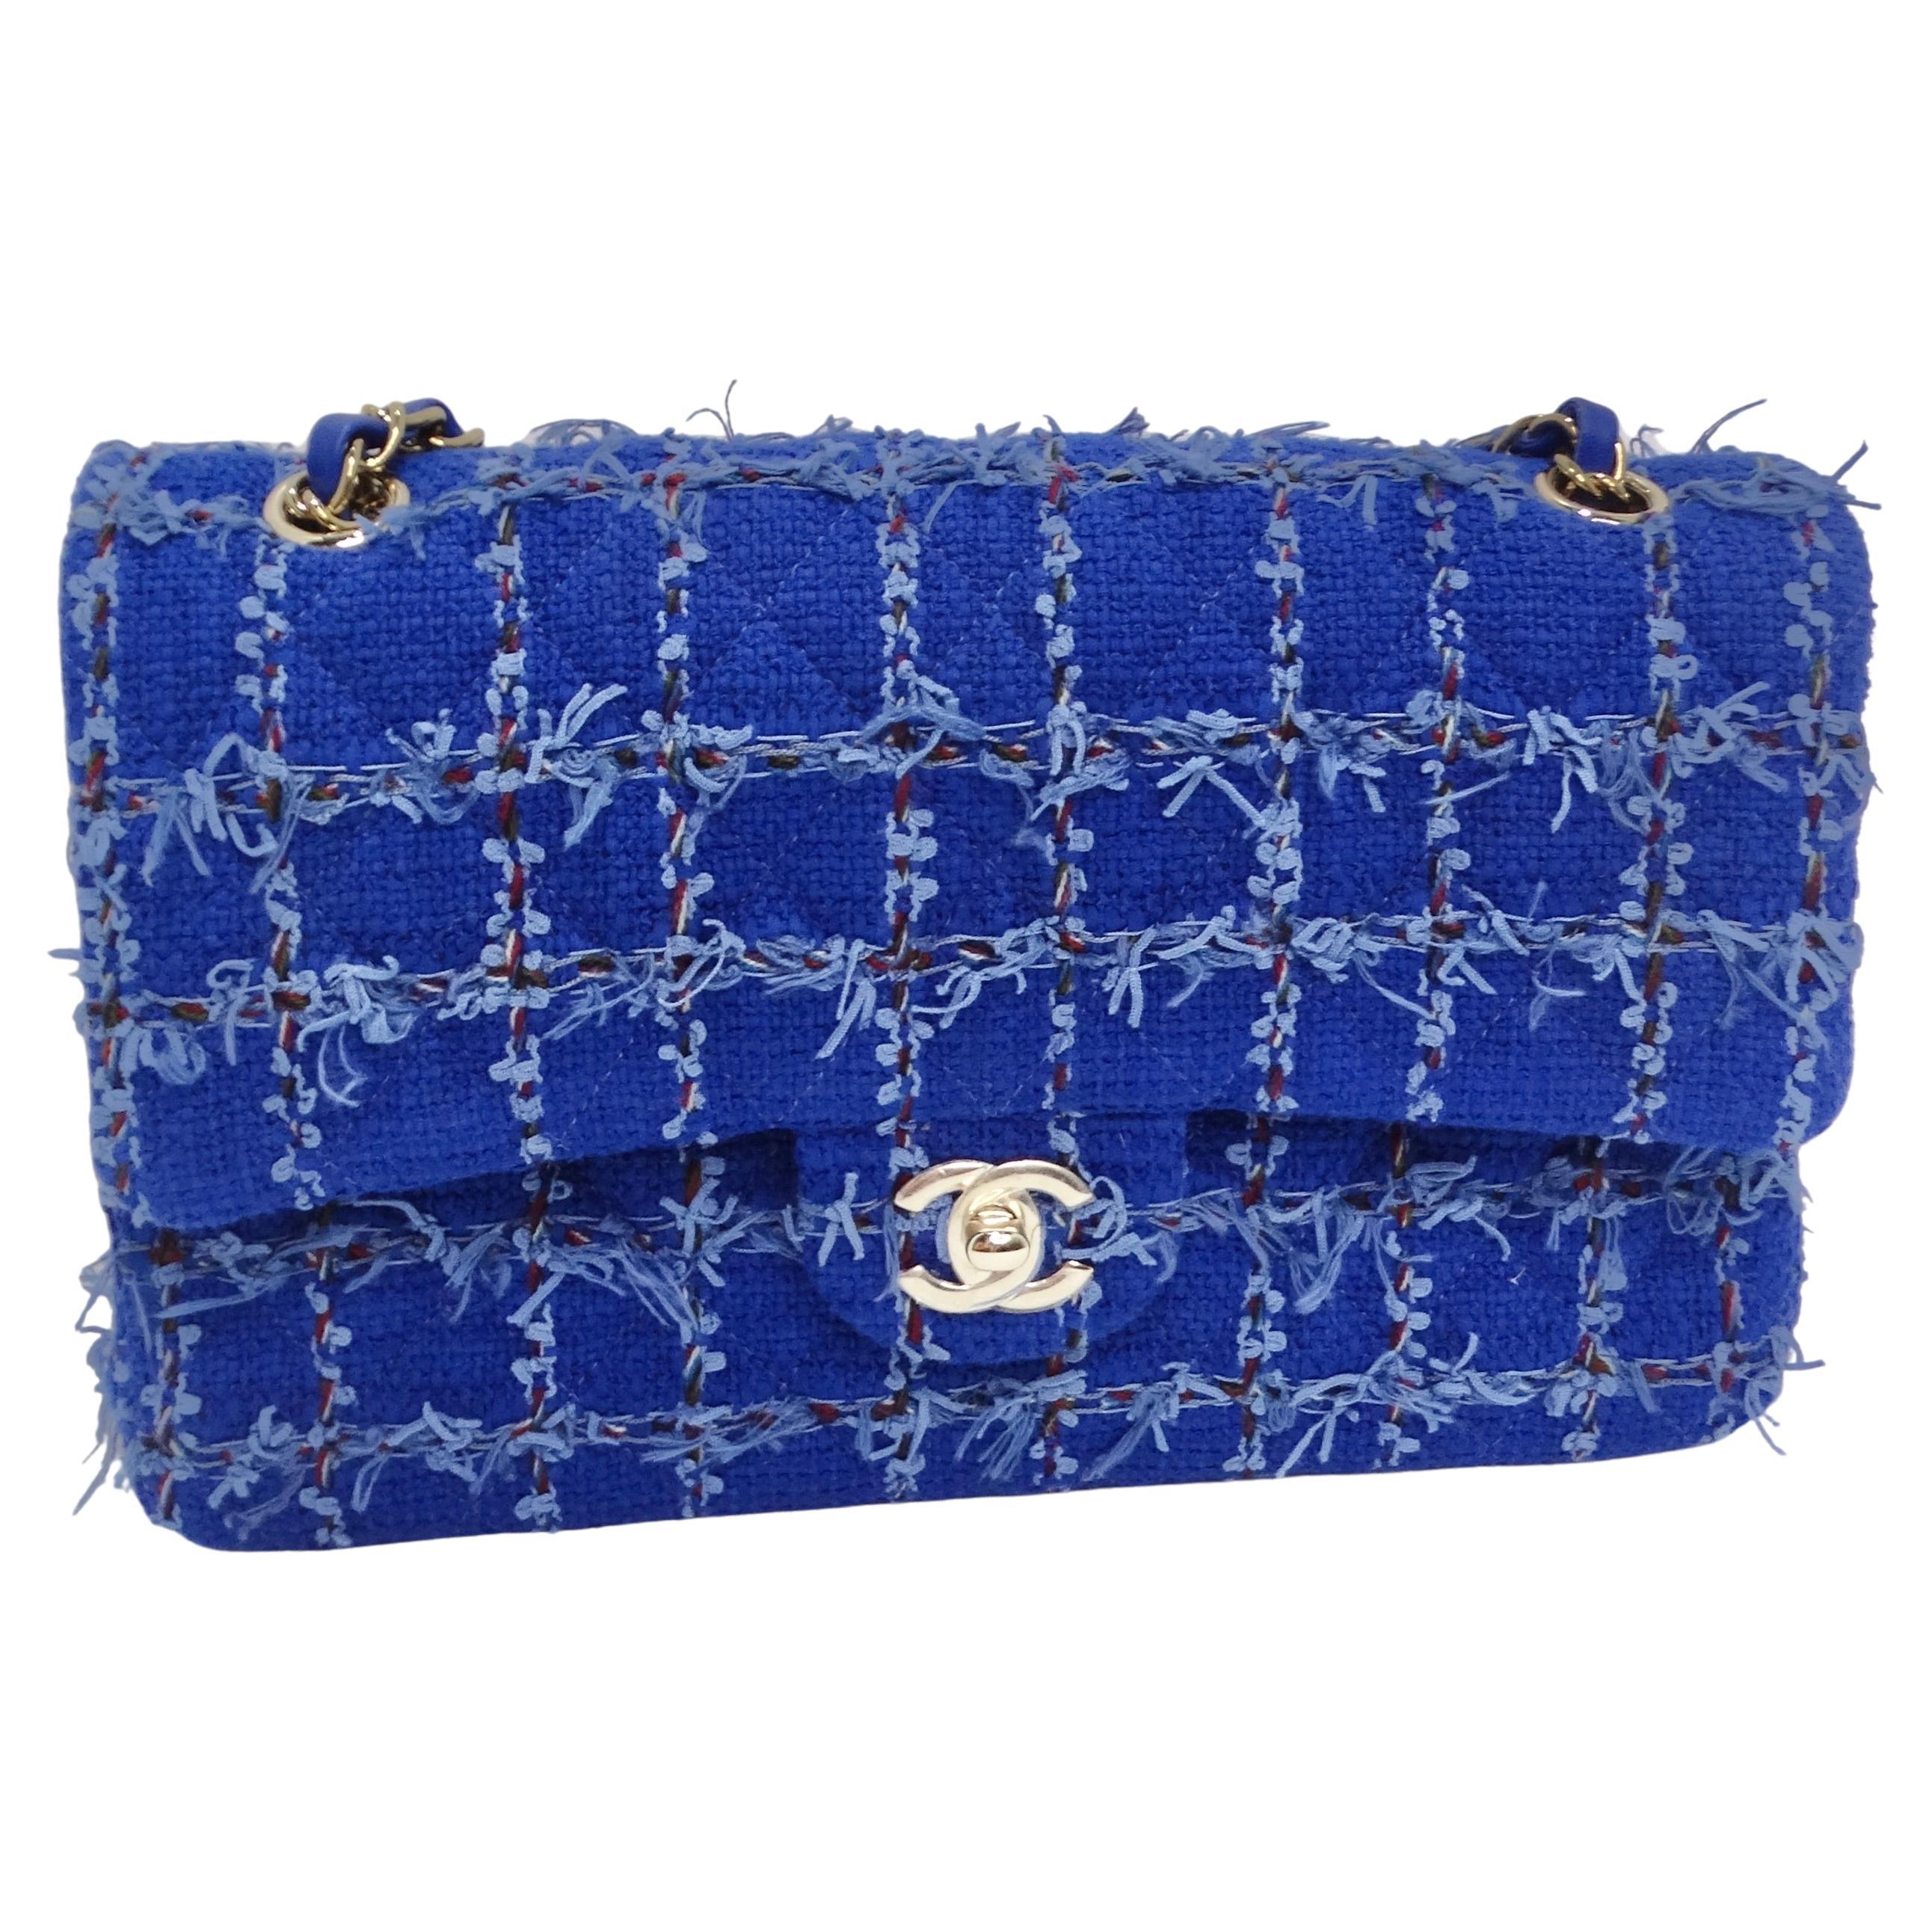 
Voici le petit sac à rabat classique en tweed bleu matelassé de Chanel, un chef-d'œuvre de la mode qui allie sans effort élégance et style. Ce superbe petit sac à bandoulière transversal témoigne du design impeccable de Chanel. Fabriqué avec